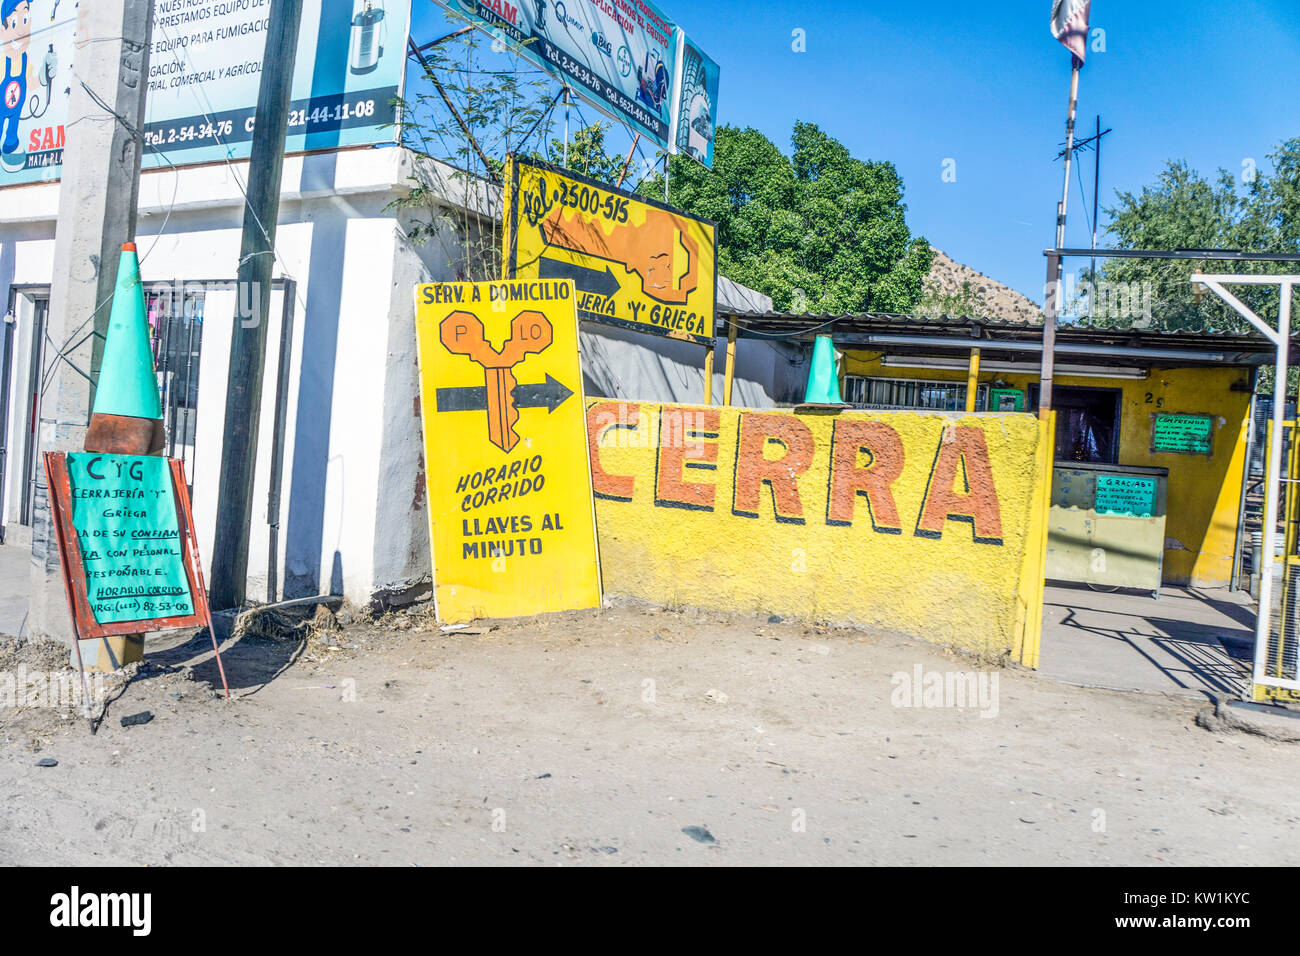 Mehrere helle Buntes Aufmerksamkeit erhalten Zeichen informieren Passanten Treiber zu kleinen Mexikanischen Schlosserei neben State Highway 15. Stockfoto